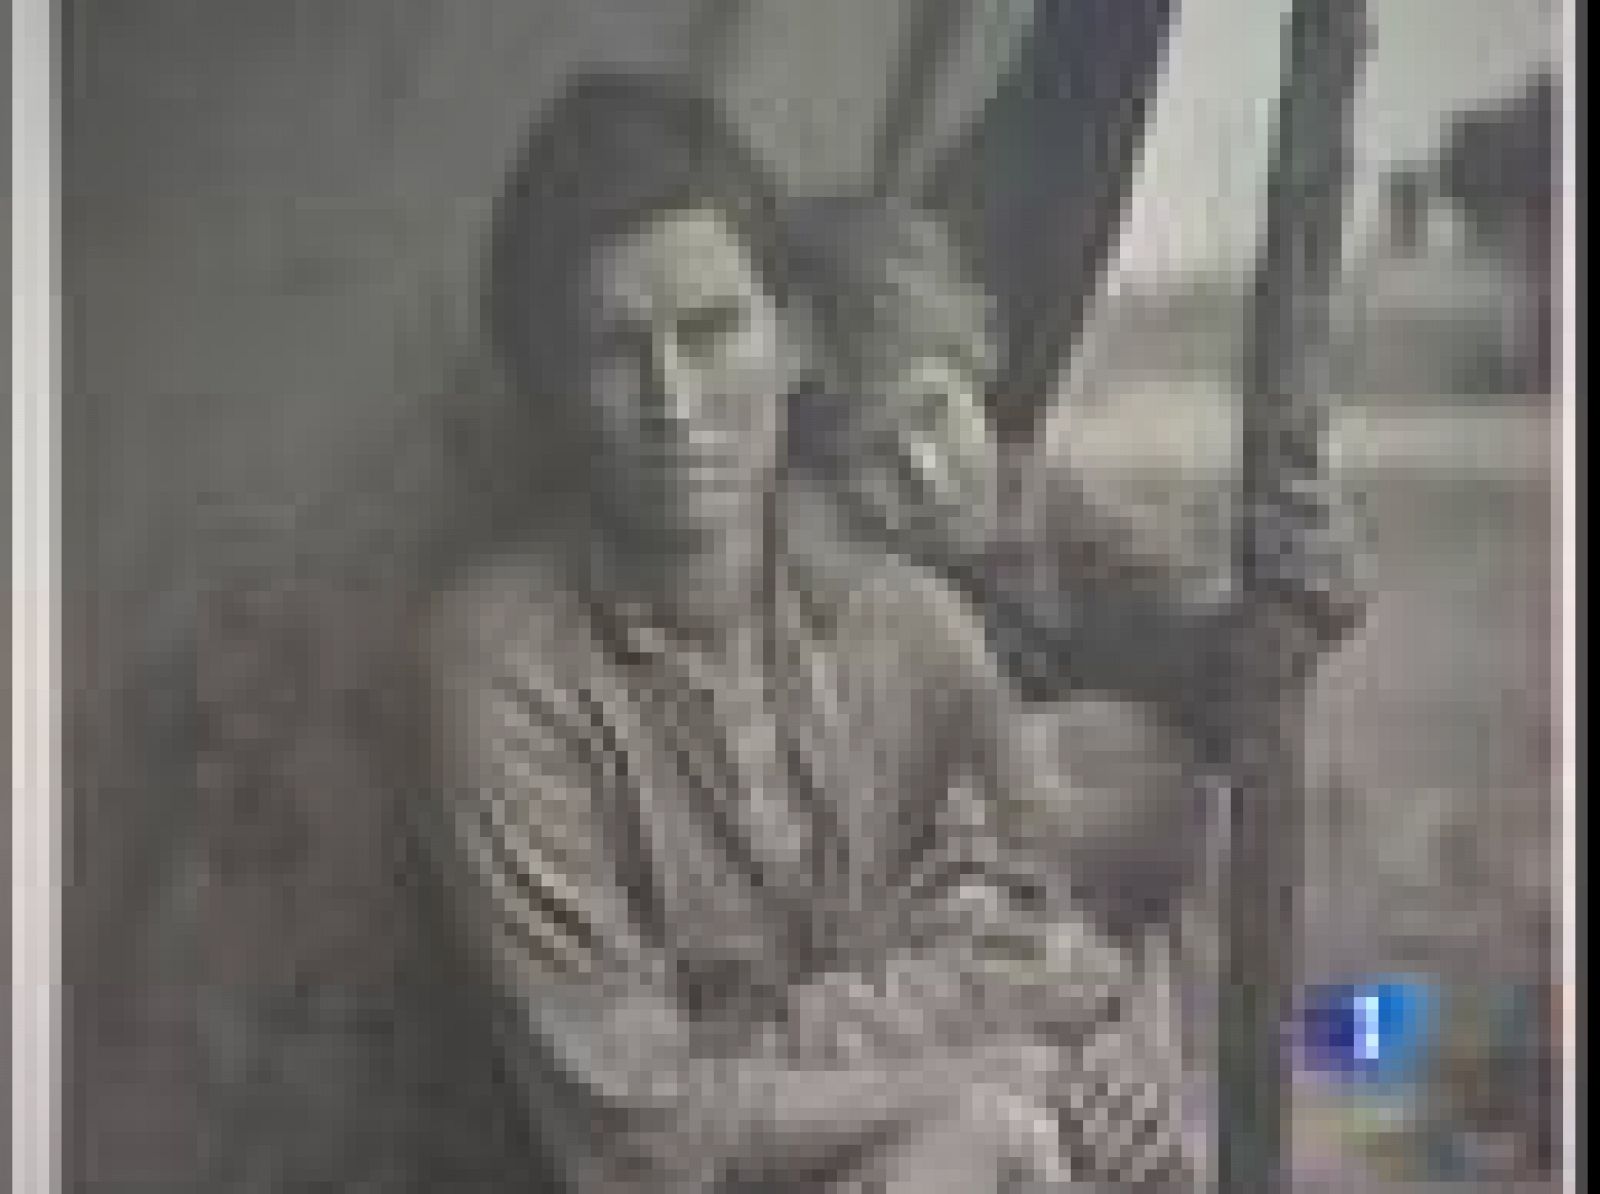 Durante la Gran Depresión, millones de americanos quedaron sumidos en la pobreza. El Gobierno estadounidense encargó a un grupo de fotógrafos que retrataran su realidad. Entre ellos estaba una mujer: Dorothea Lange. Sus imágenes se han convertido en iconos de la Historia de la Fotografía y ahora se pueden ver en Madrid.